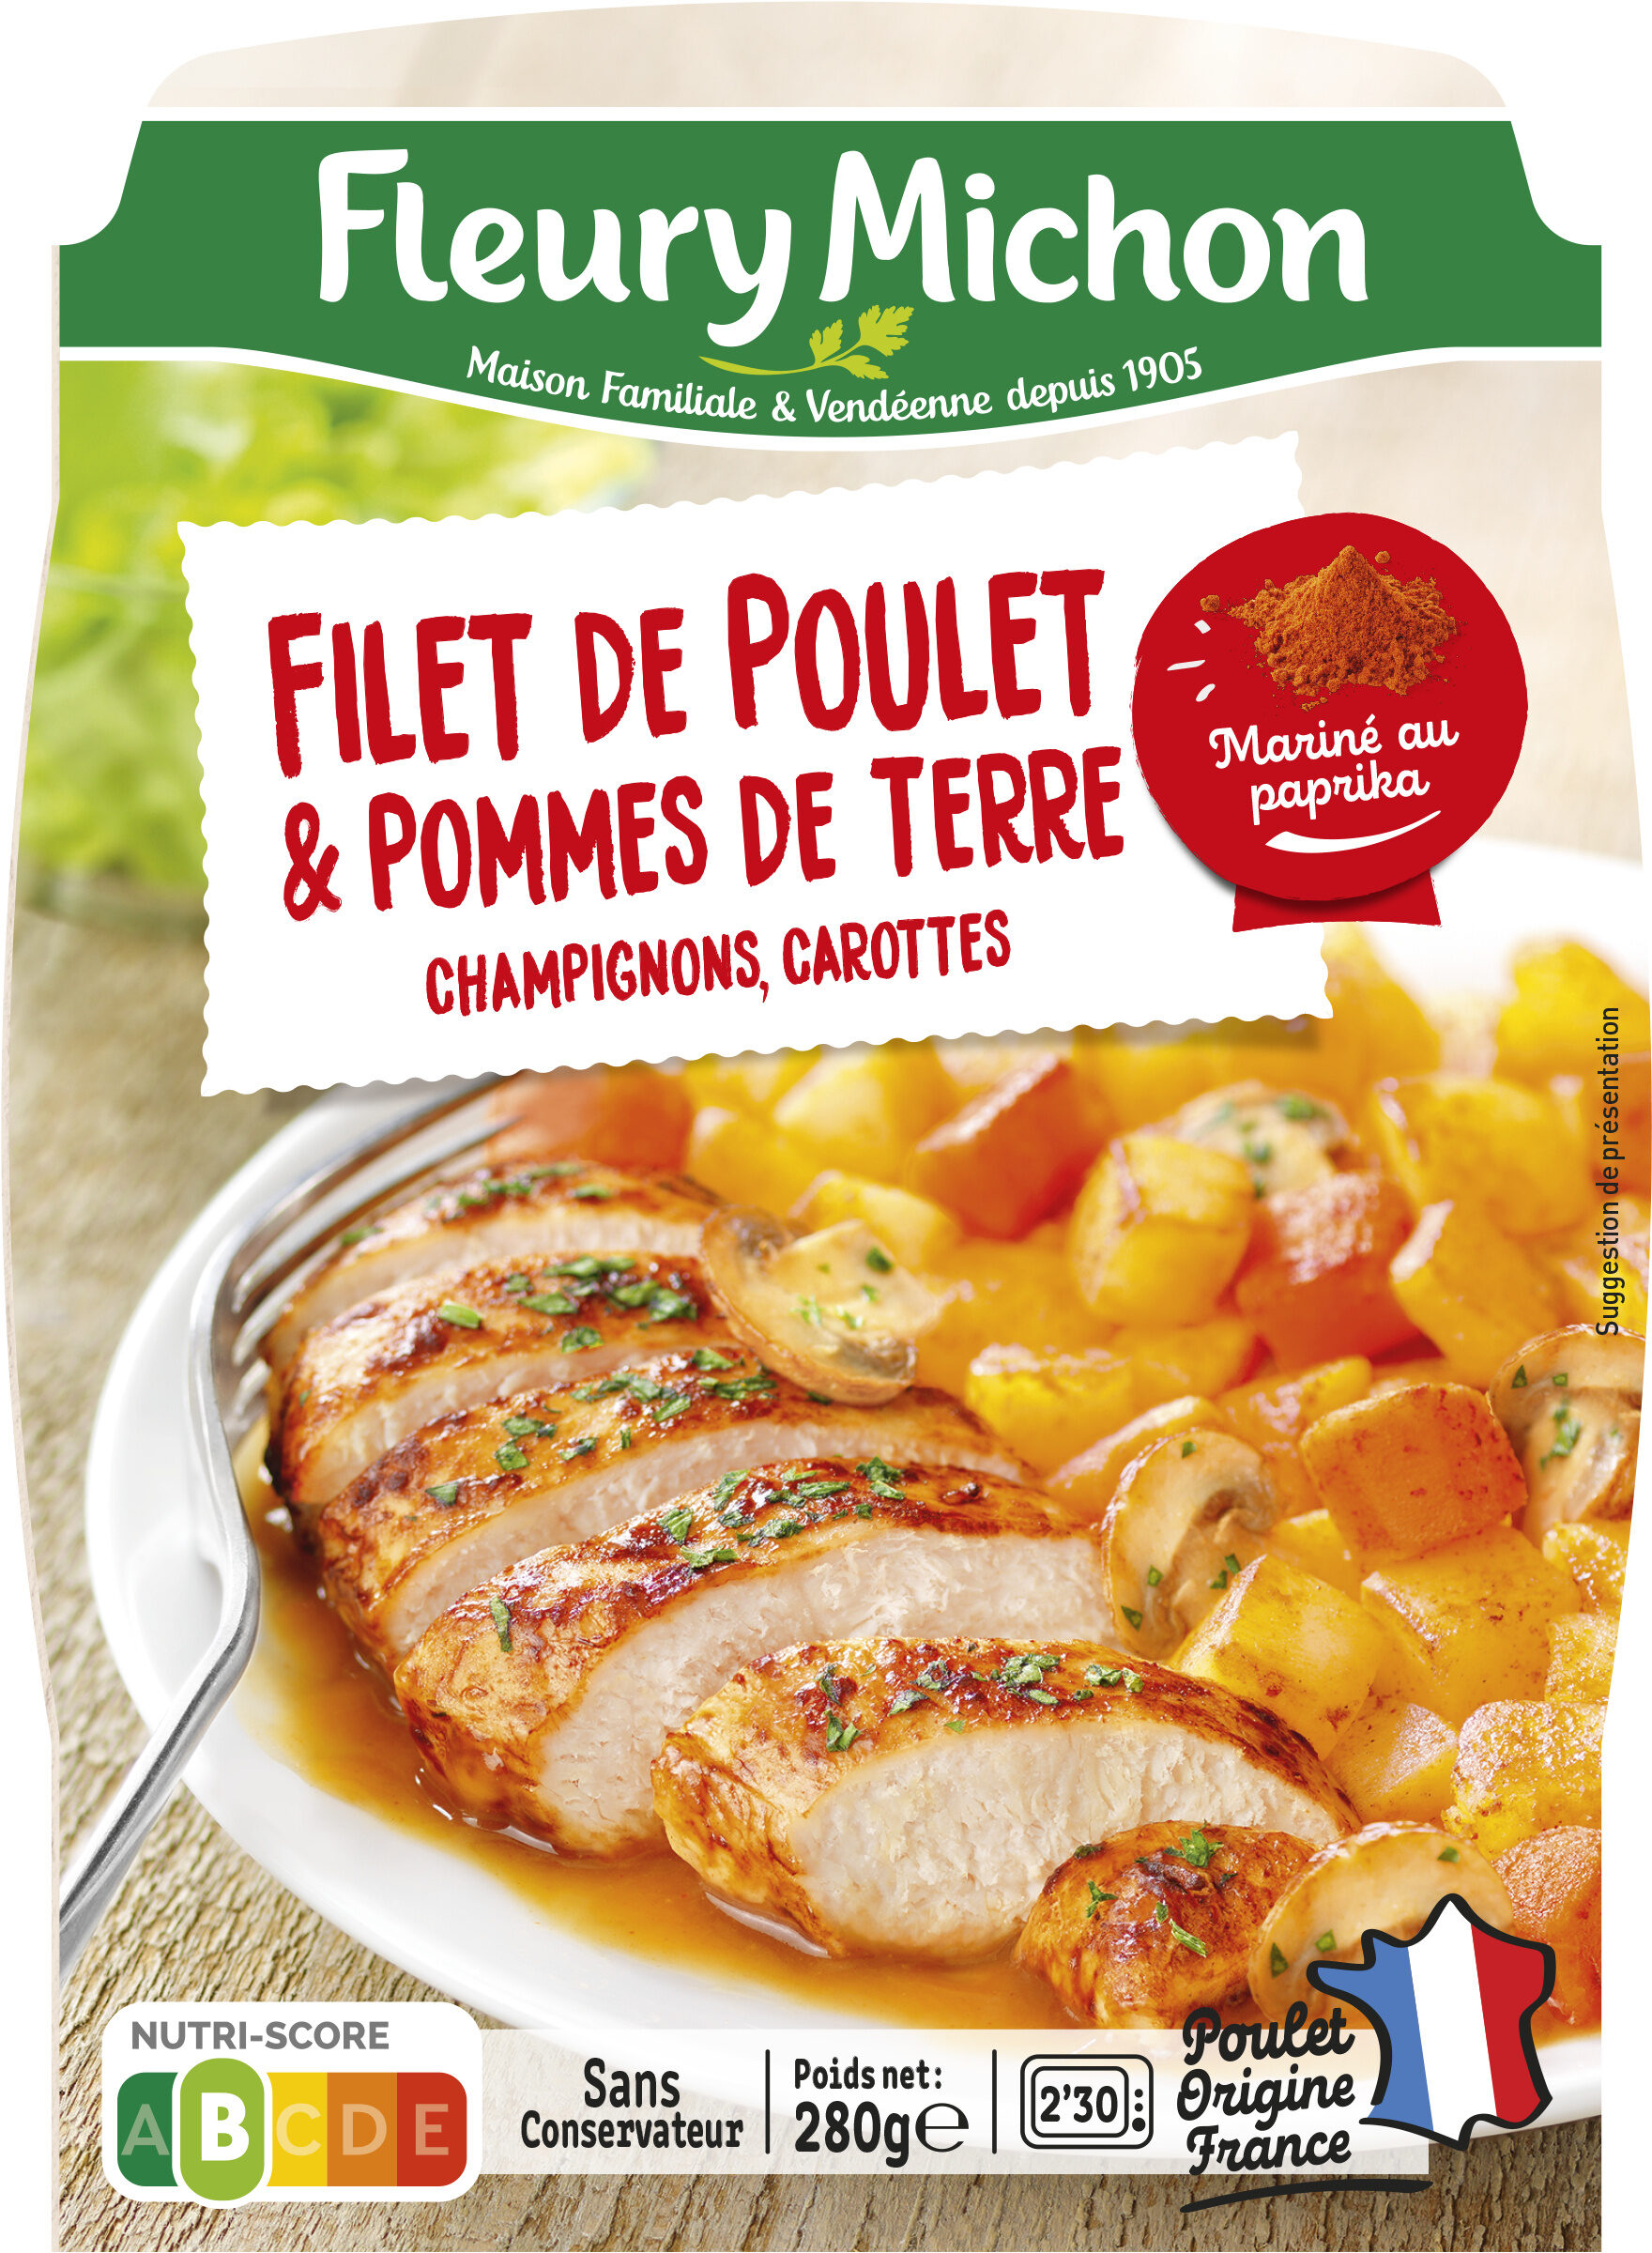 Filet de poulet & pommes de terre, champignons, carottes - Produkt - fr